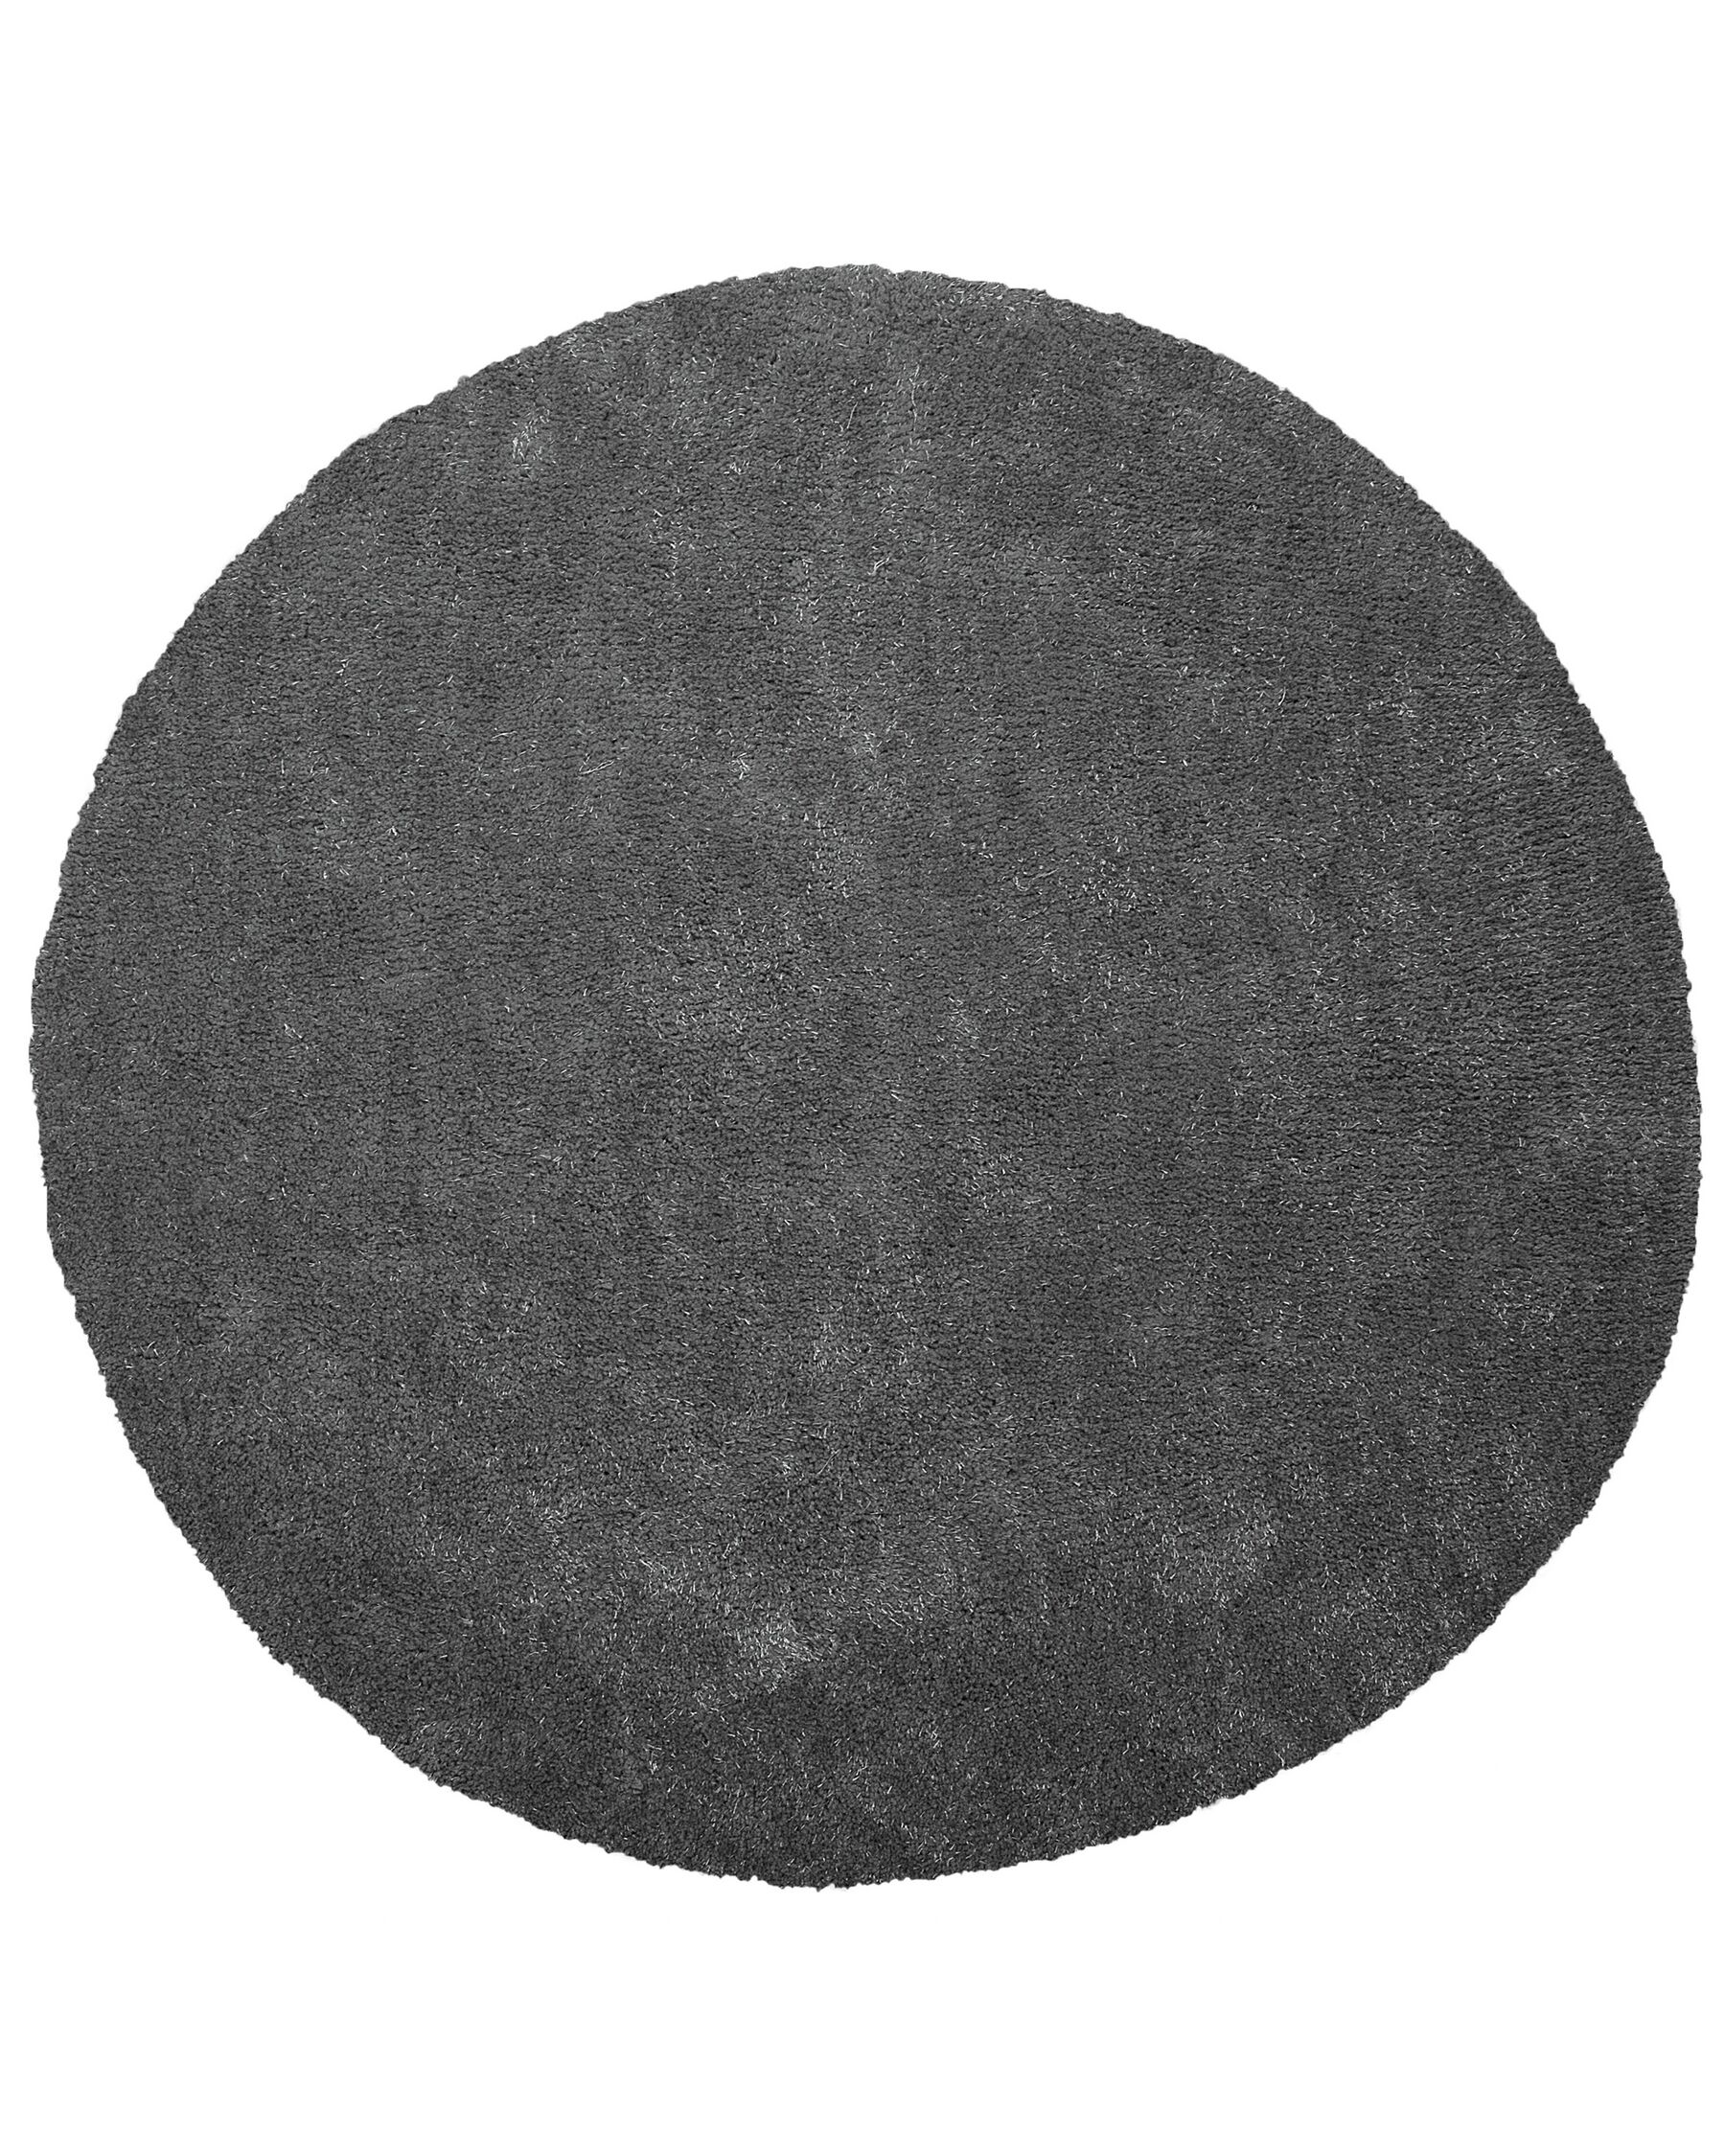 Tappeto shaggy grigio scuro tondo ⌀ 140 cm DEMRE_738120